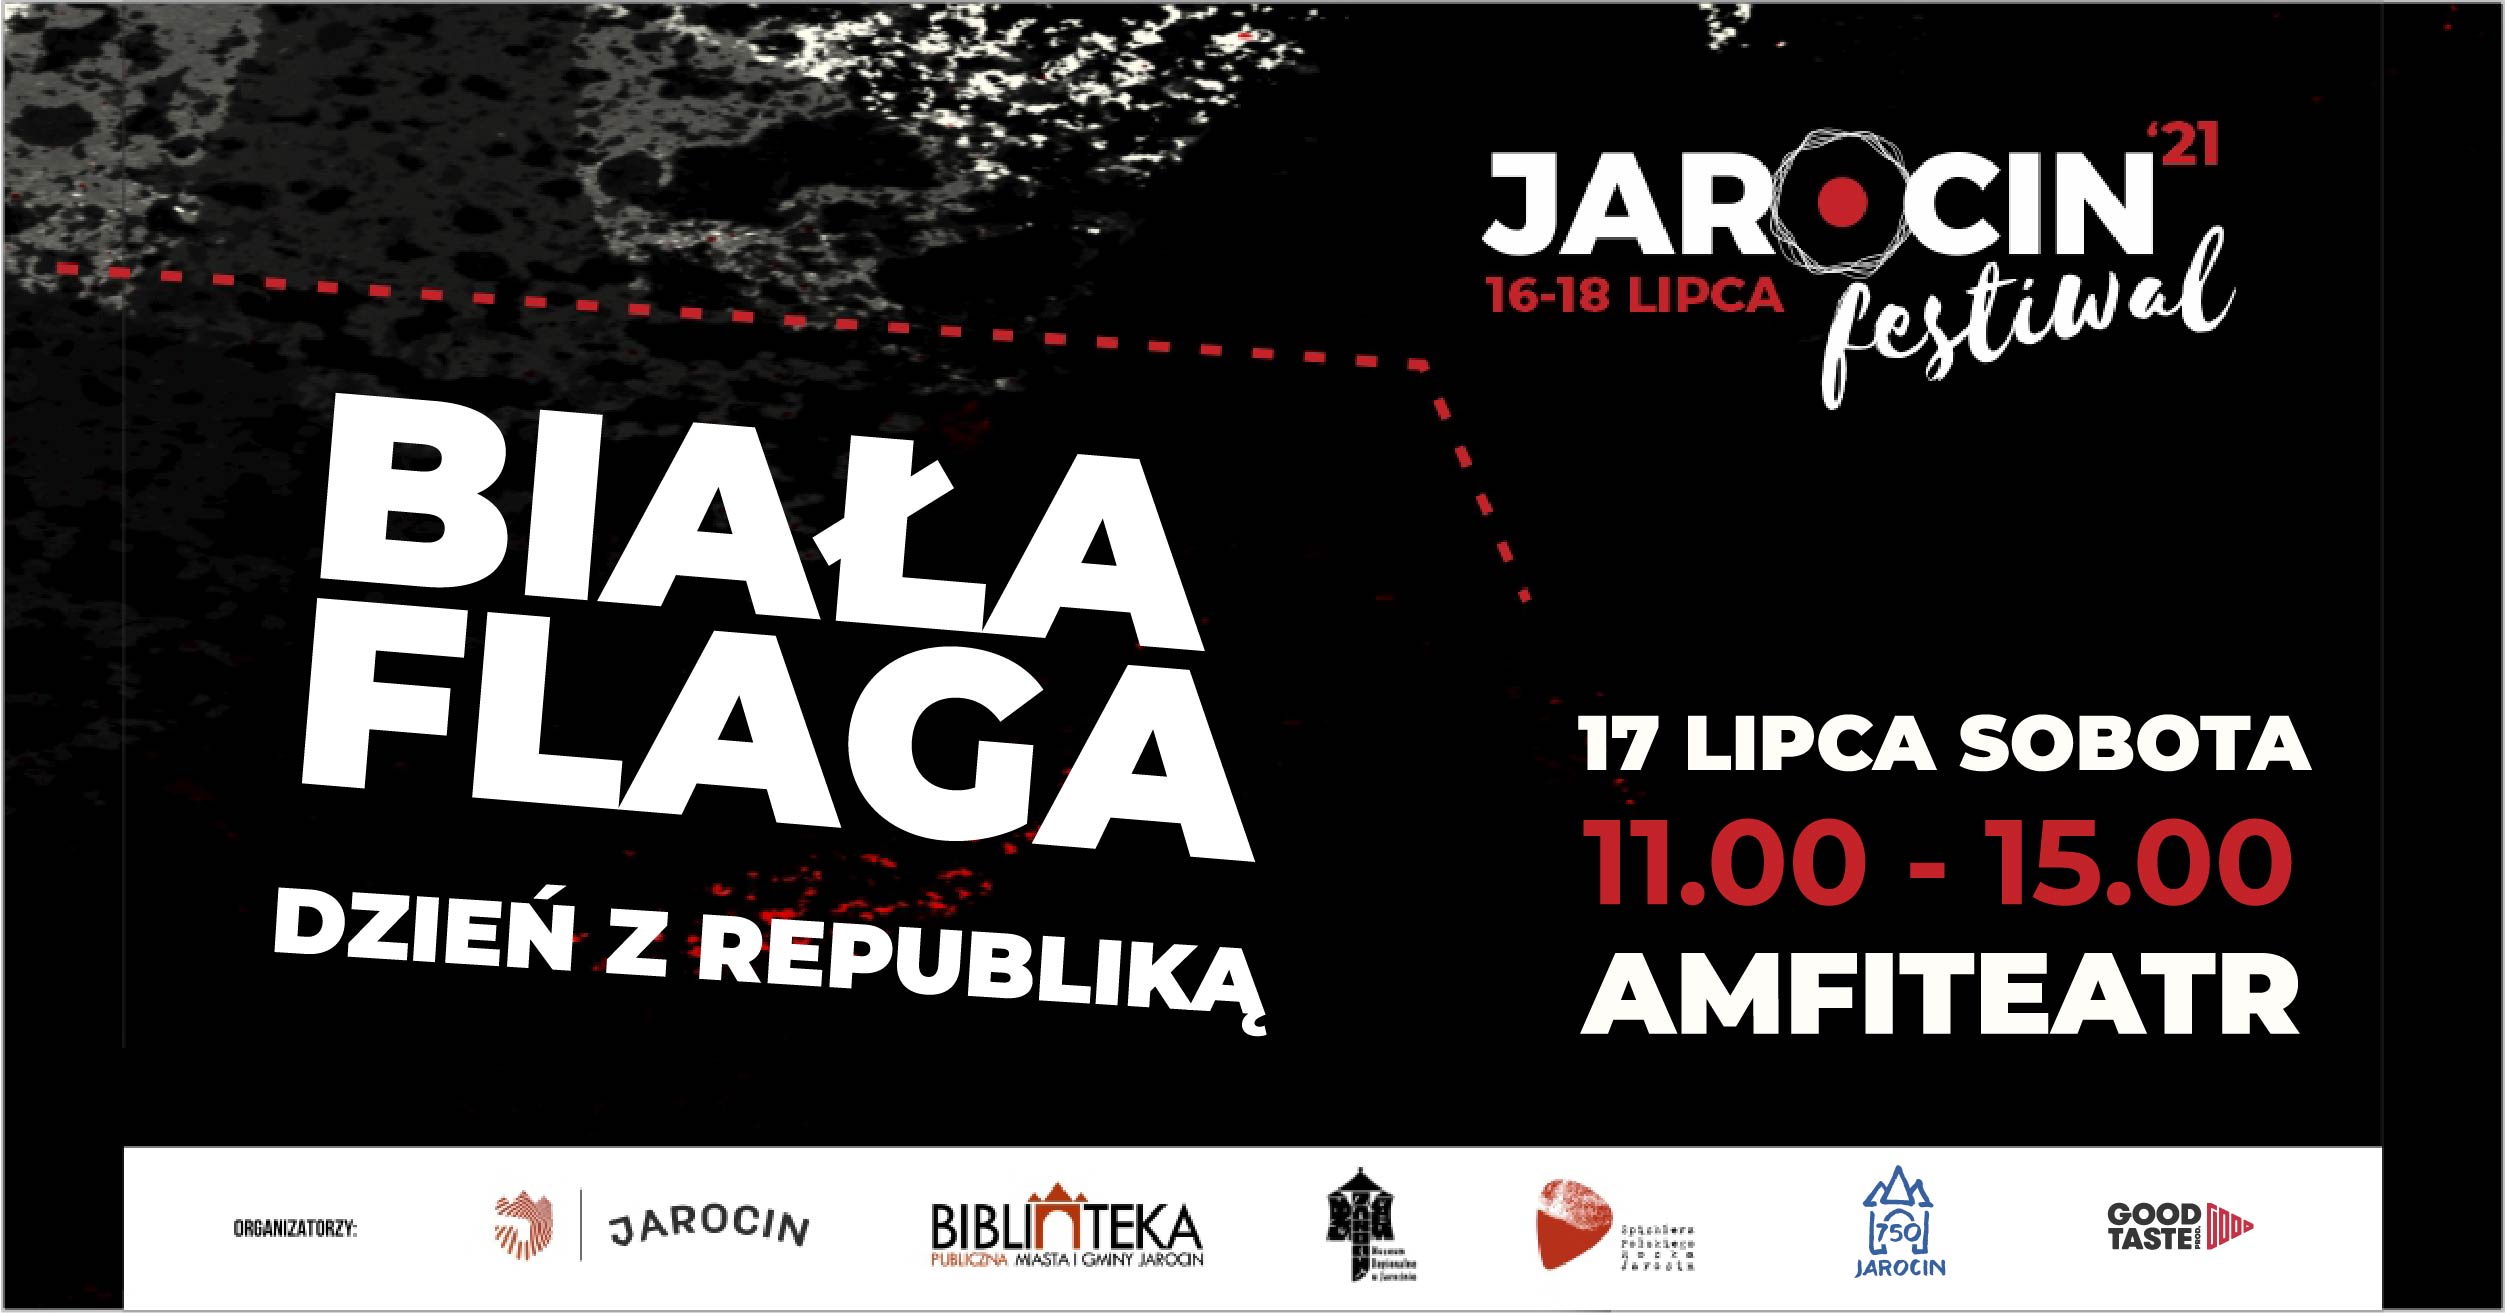 Jarocin Festiwal 2021 – Spichlerz Polskiego Rocka dzieciom – „Biała flaga” – dzień z Republiką.